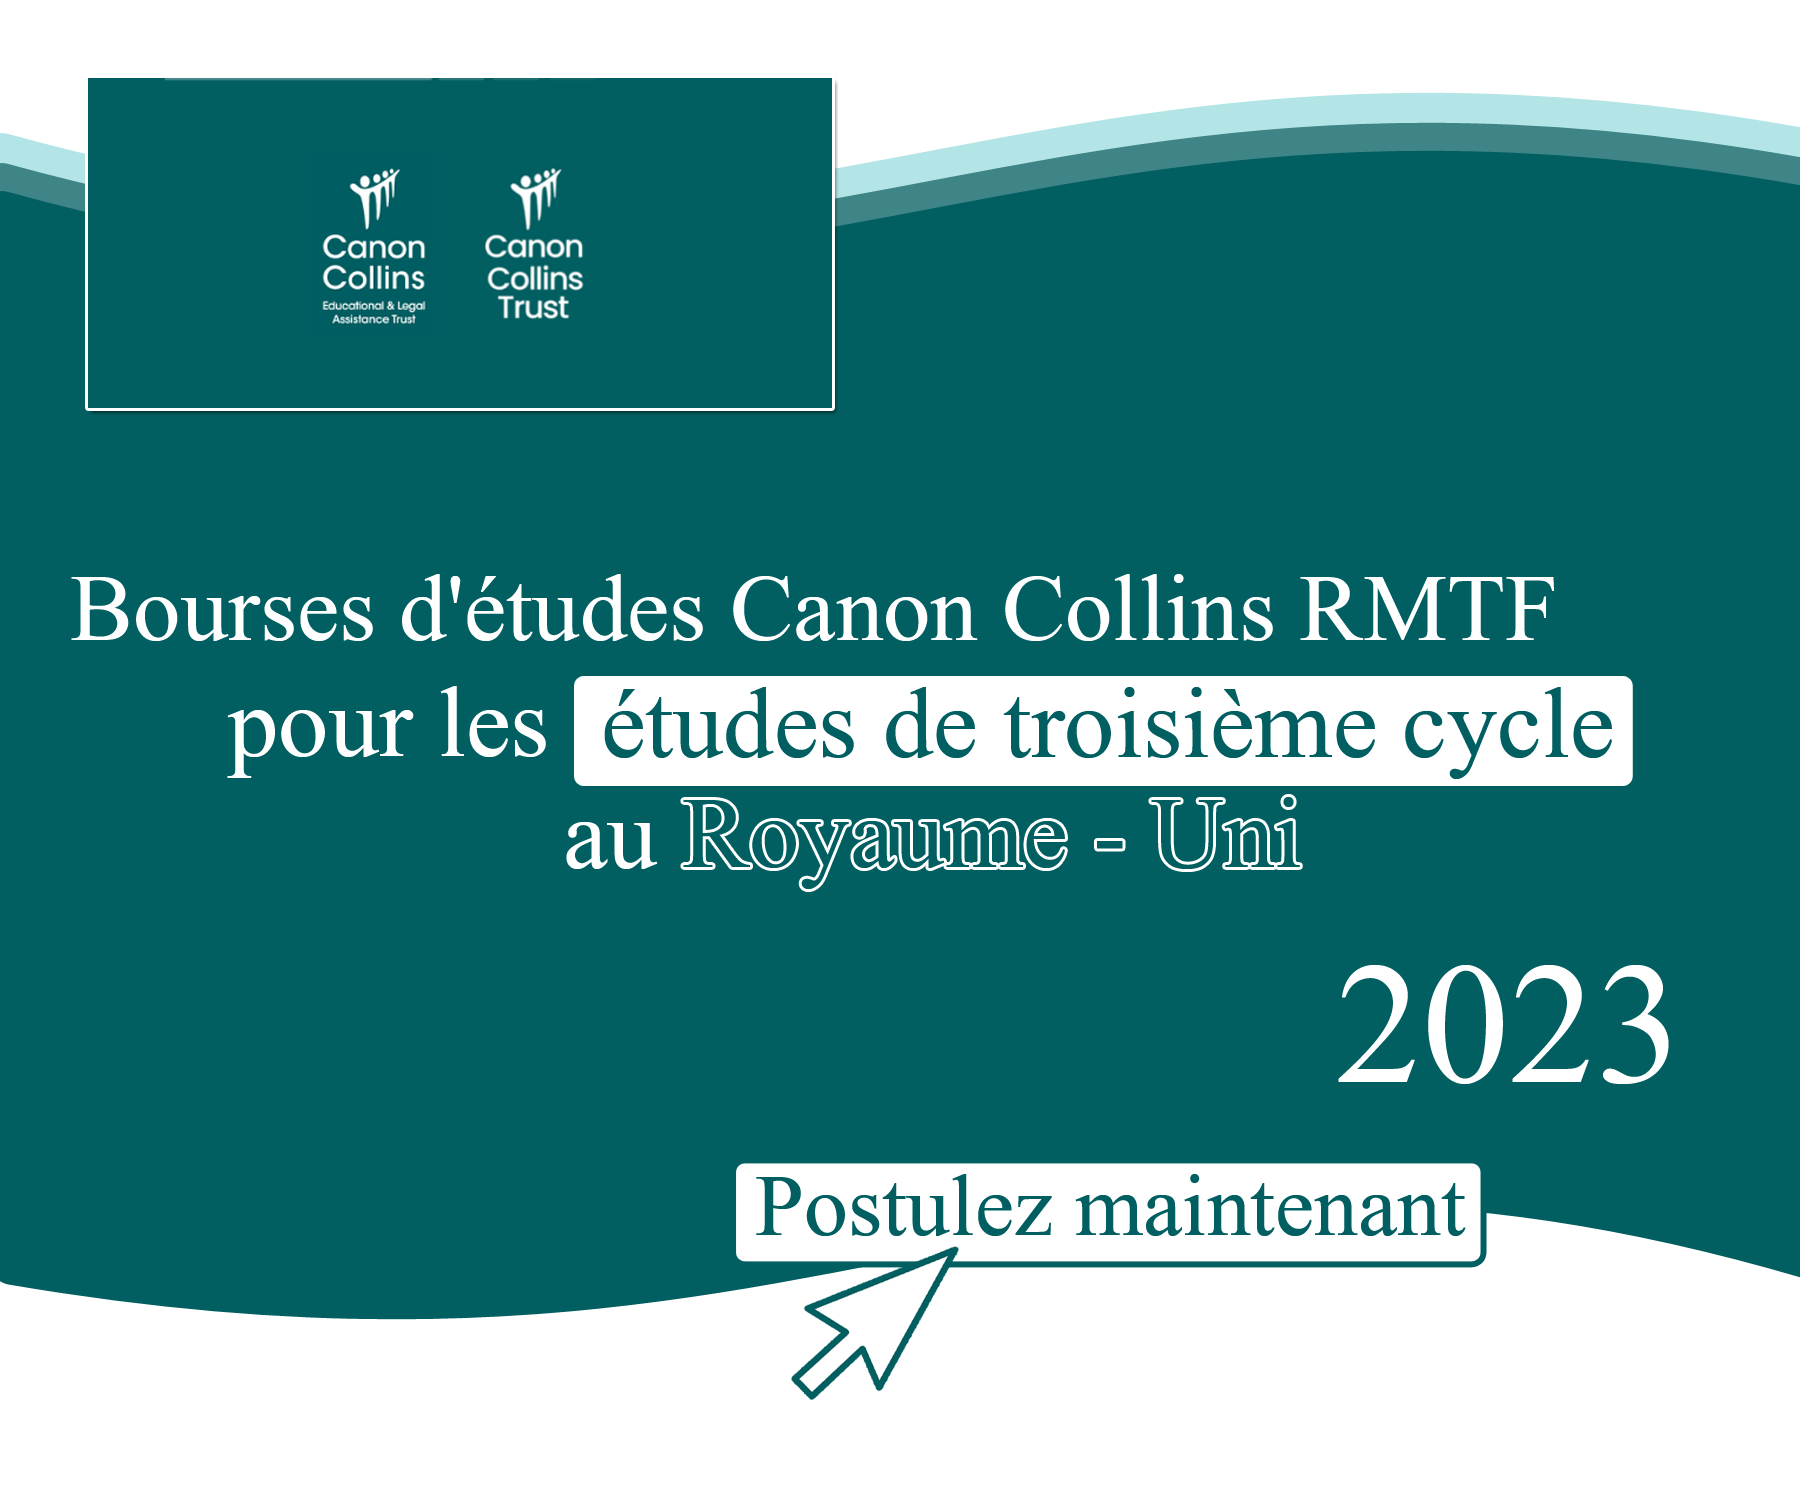 Bourses d’études Canon Collins RMTF pour les études de troisième cycle au Royaume-Uni 2023